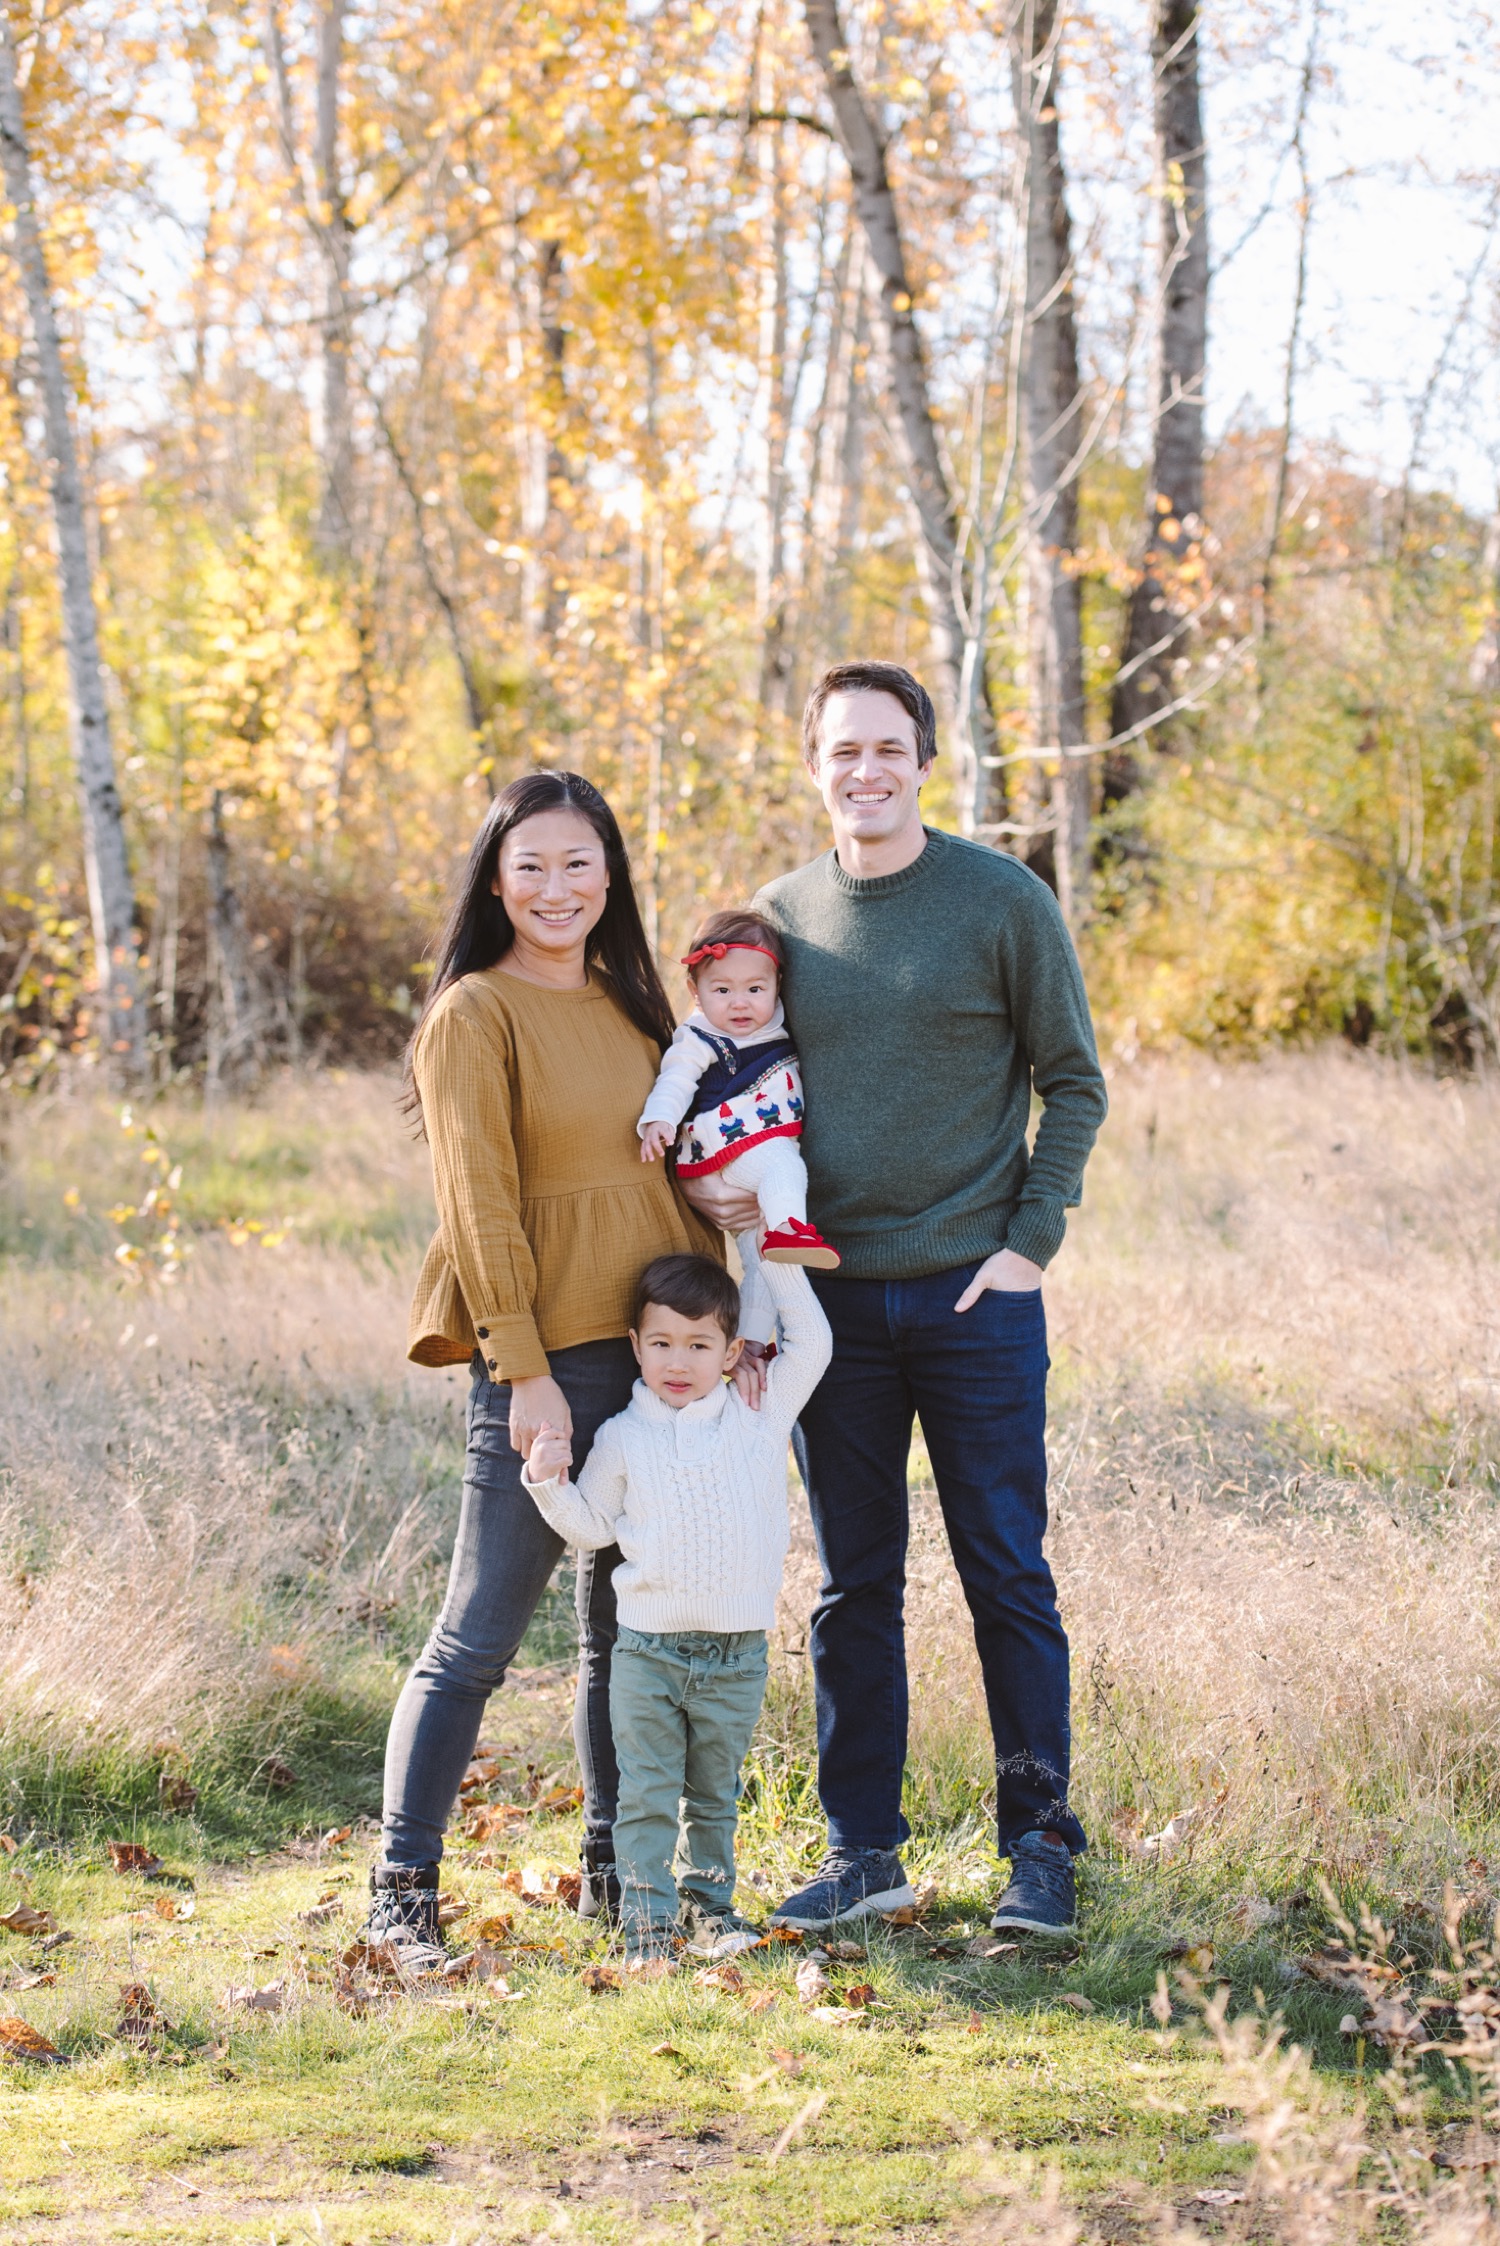 Family of 4 photo | Fall photoshoot family, Family portrait poses, Outdoor  family photos